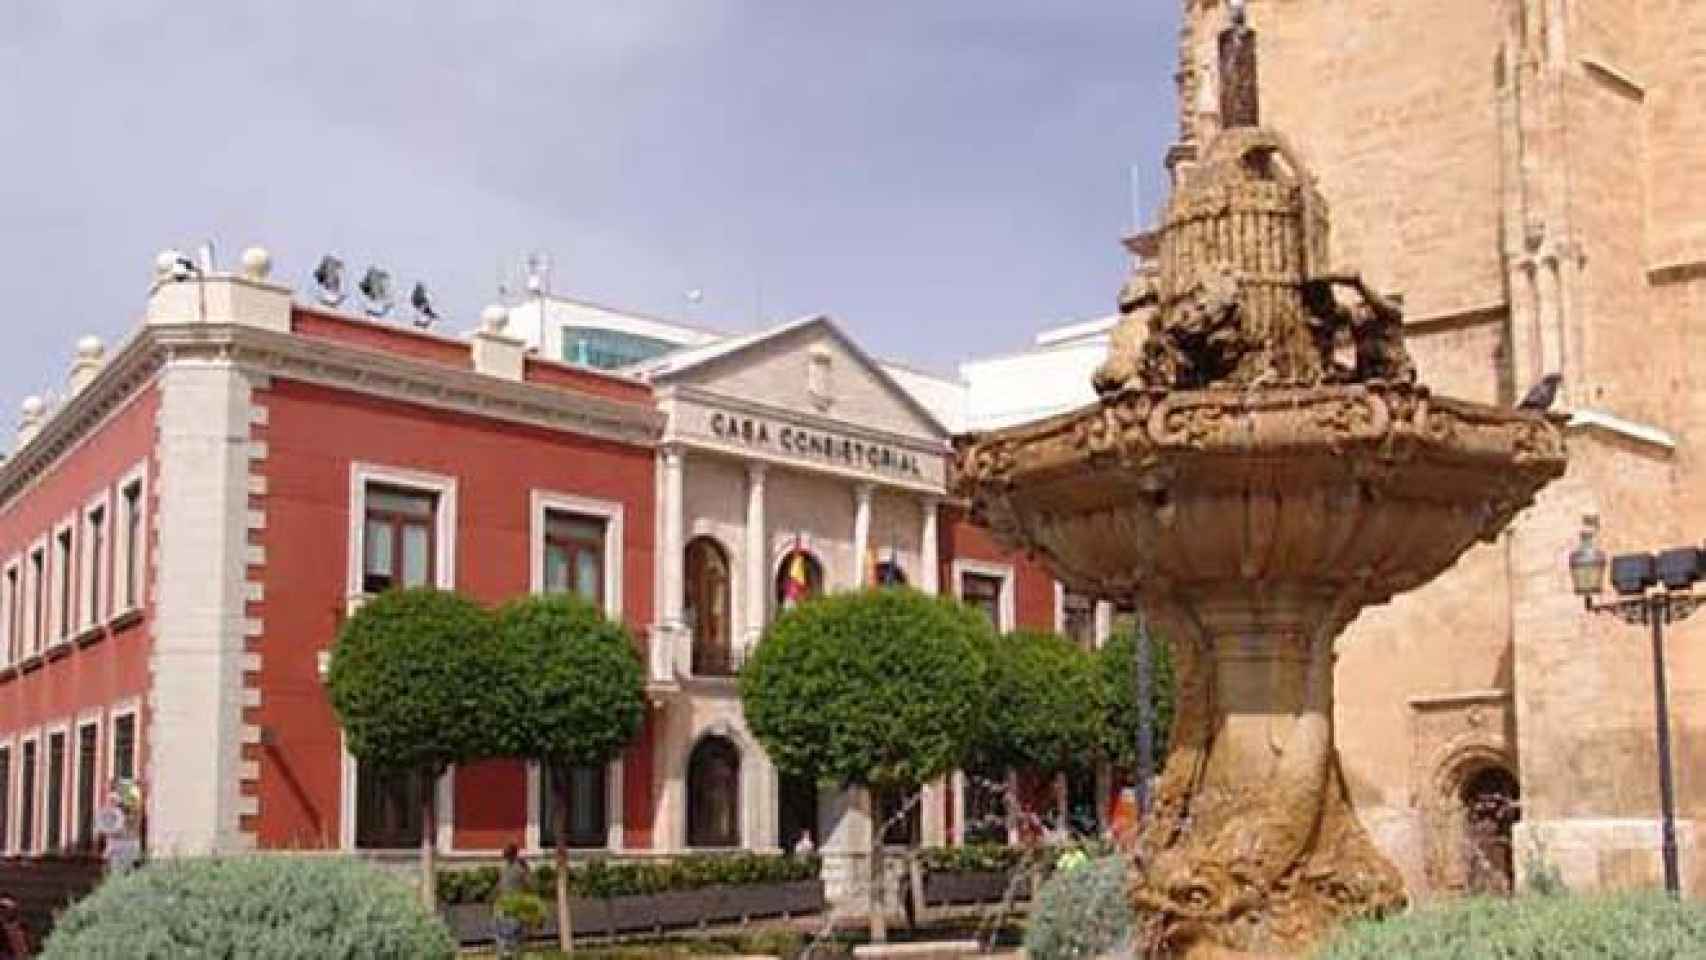 FOTO: Ayuntamiento de Valdepeñas